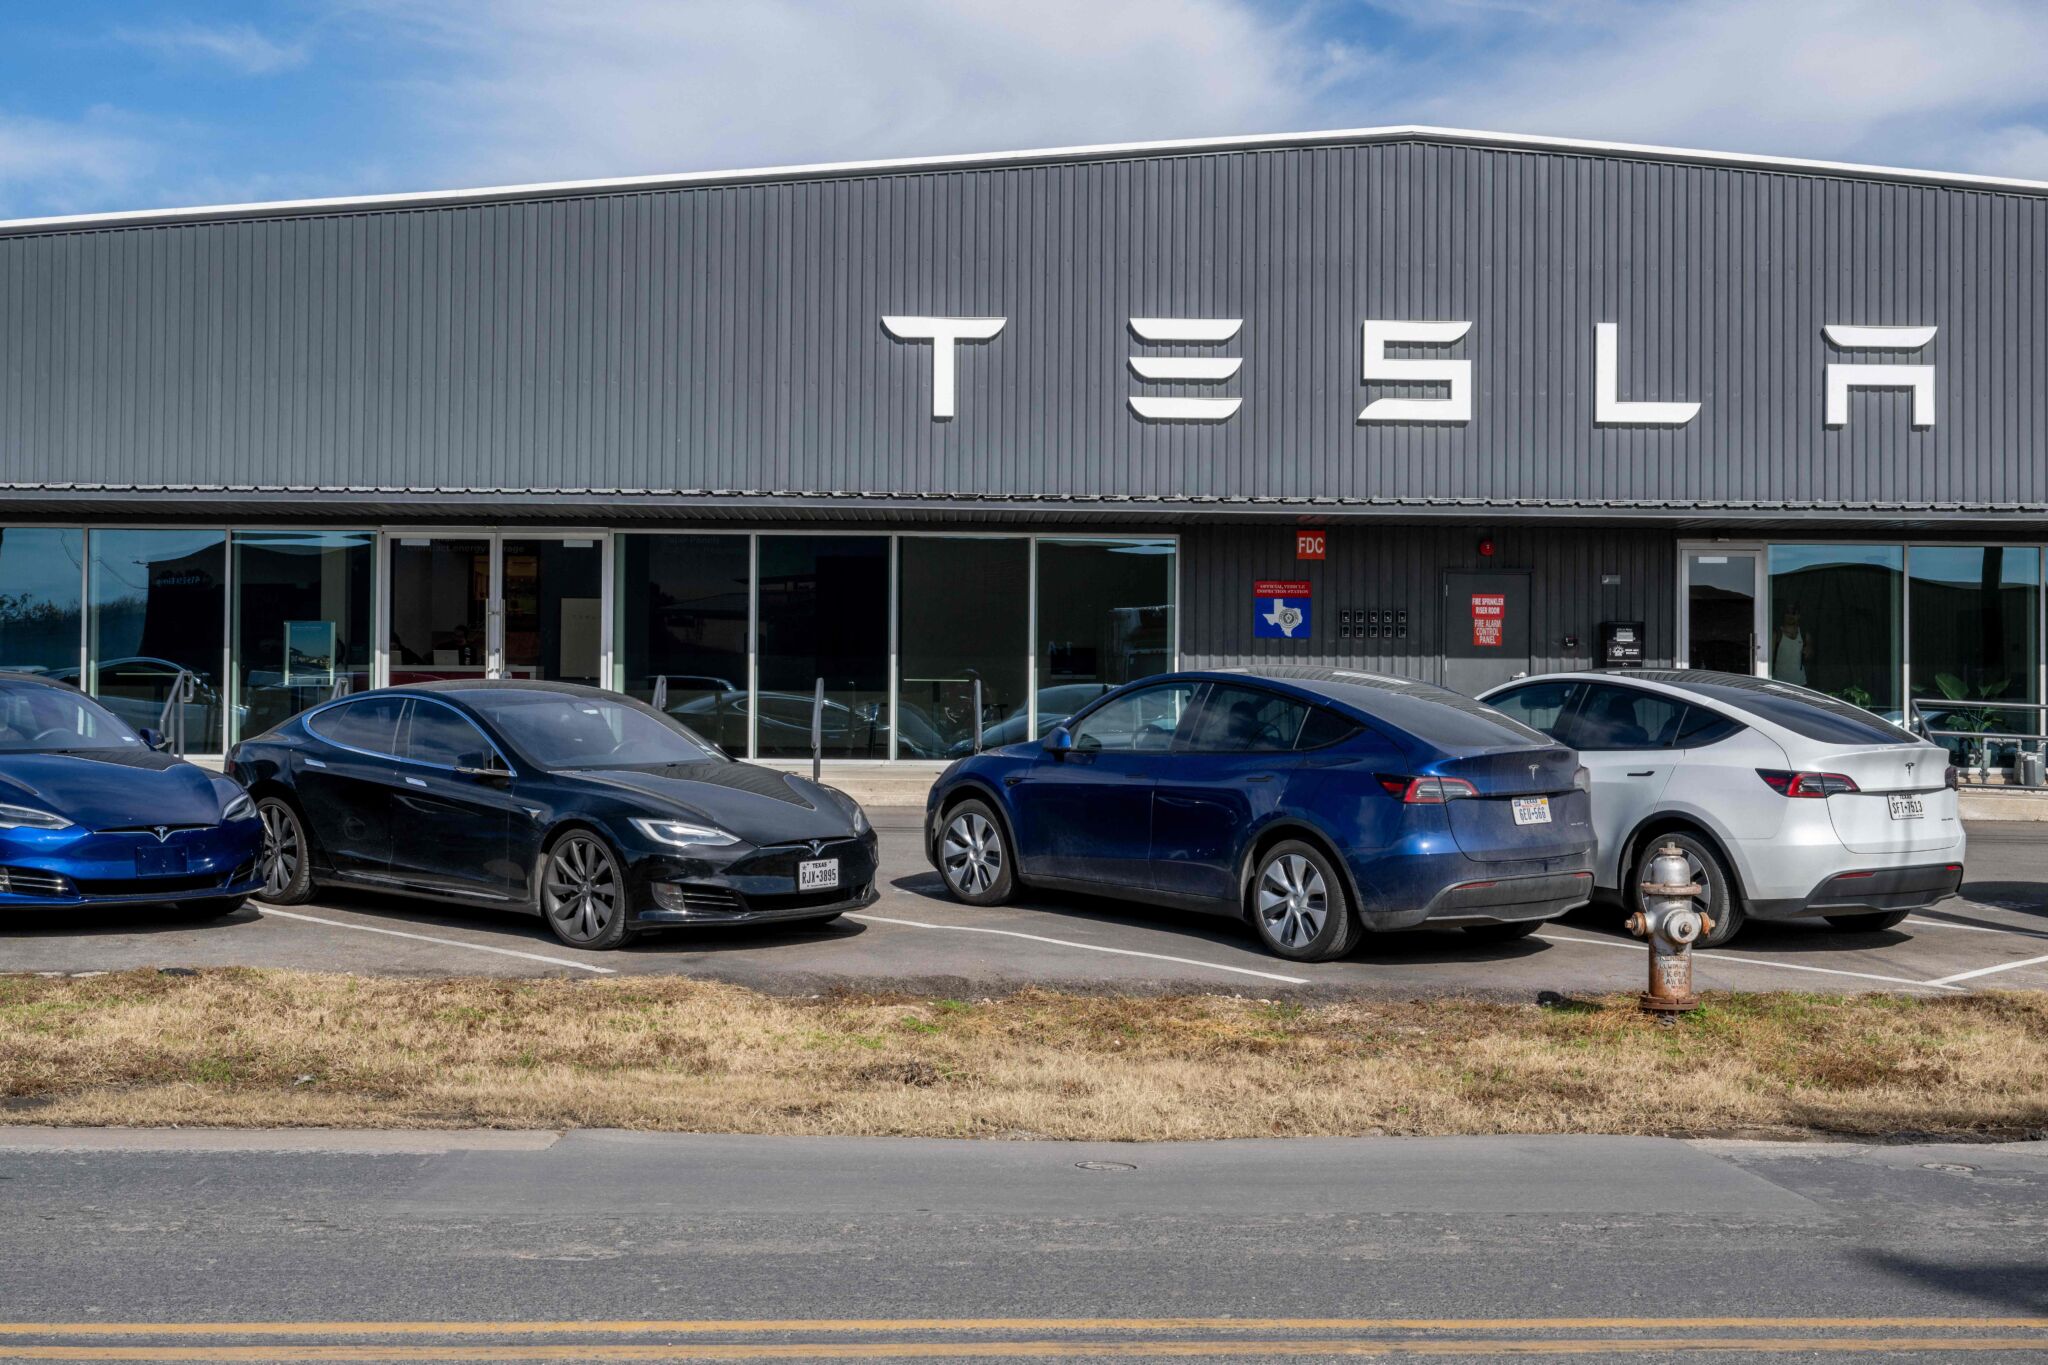 Construção da Tesla vista de frente, marca virou sinônimo de carros autônomos.